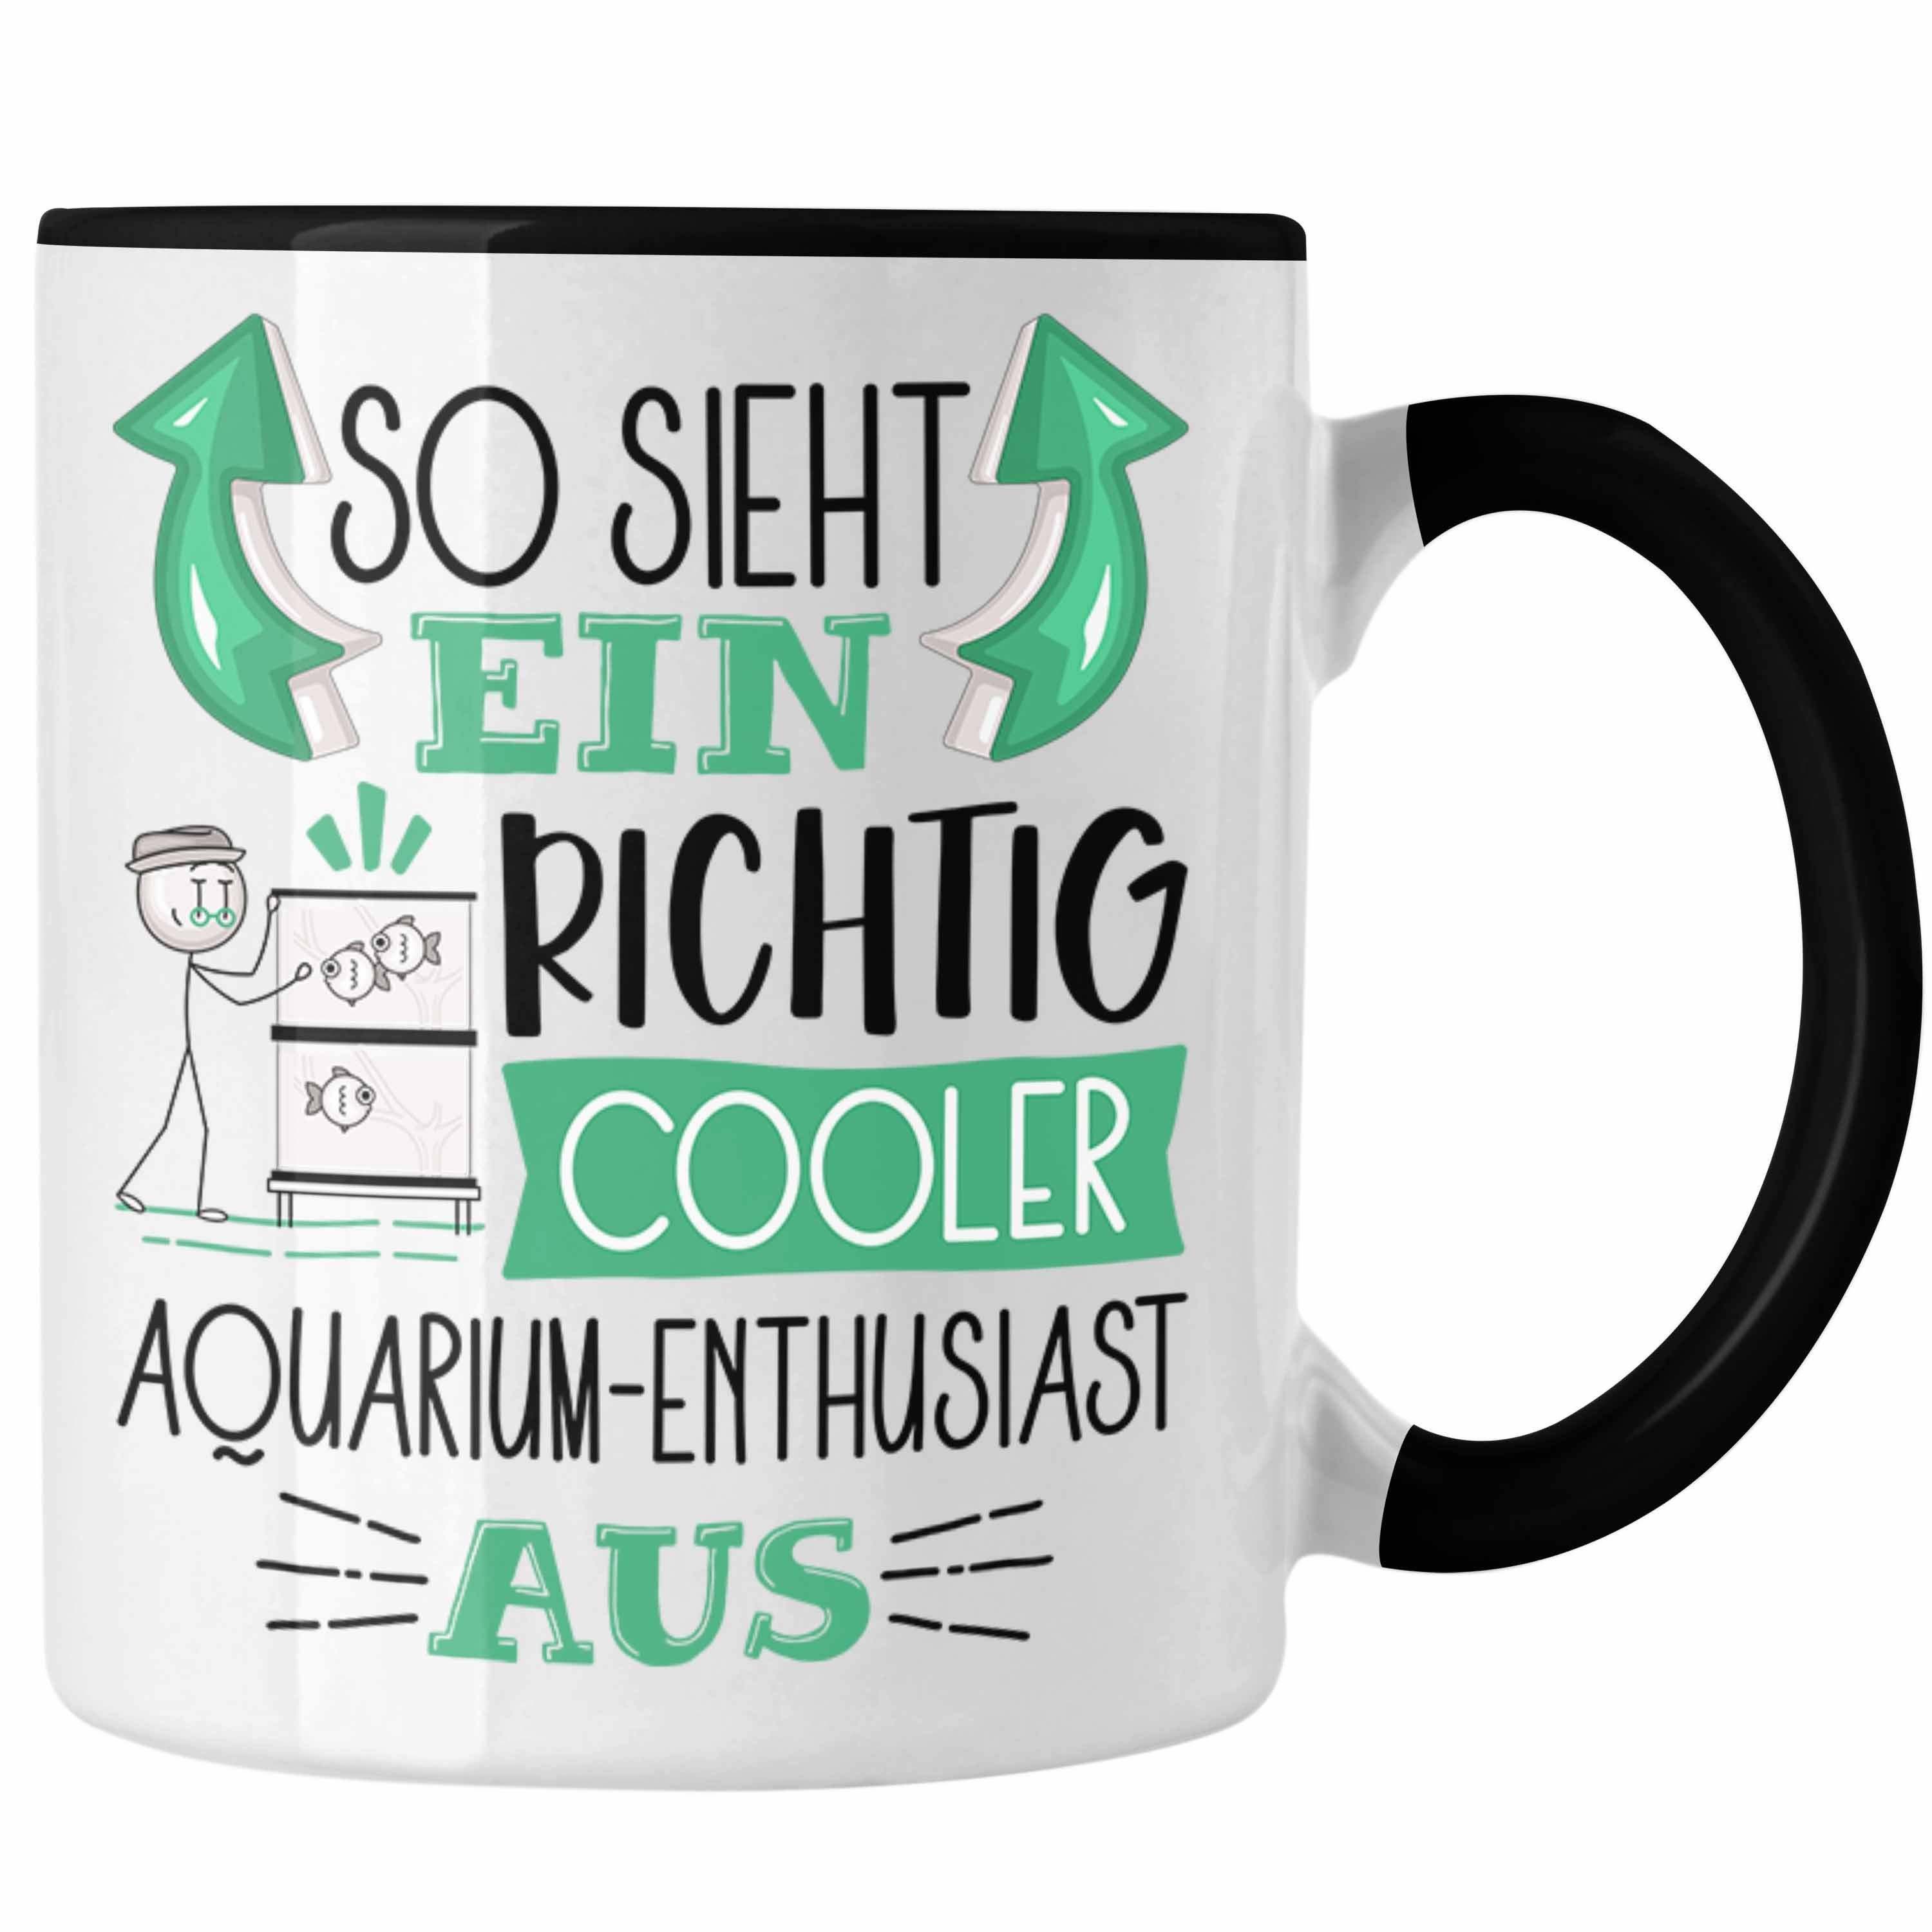 Richtig Aquarium-Enthusi Ein Trendation So Cooler Tasse Tasse Aquarium-Enthusiast Schwarz Sieht